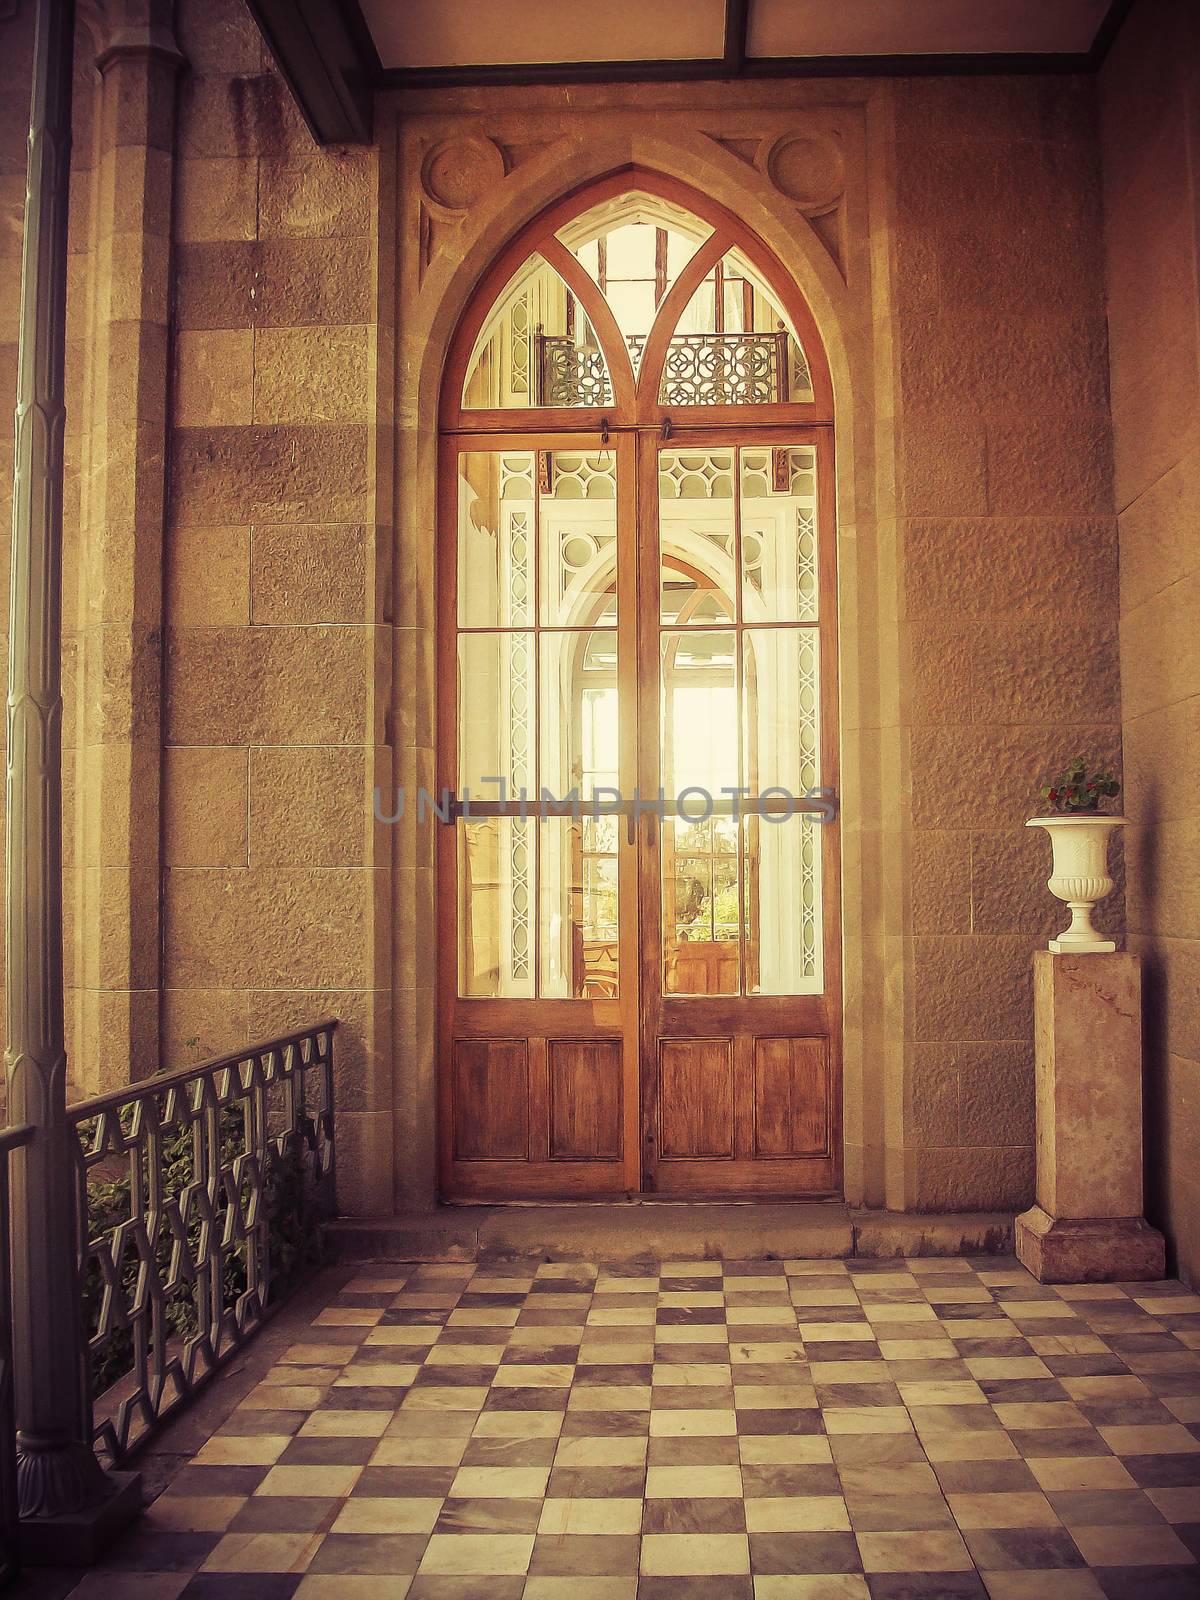 Glass door in old castle